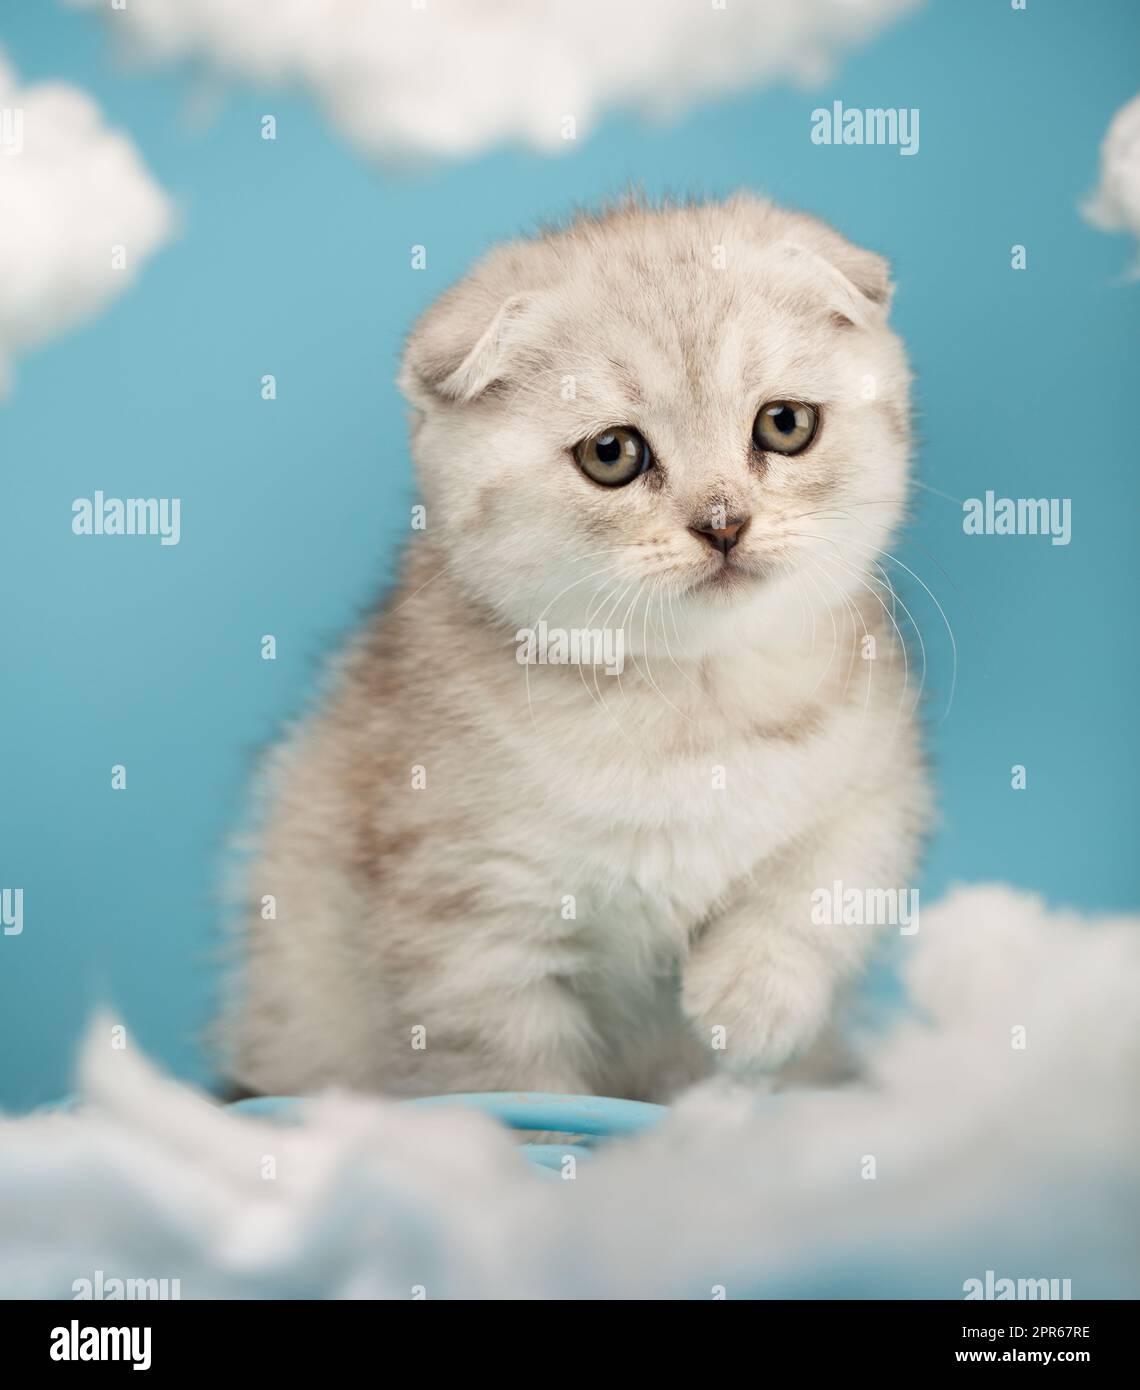 Porträt eines Kätzchens, das alles erforscht und zwischen weißen Wolken auf blauem Hintergrund läuft. Stockfoto